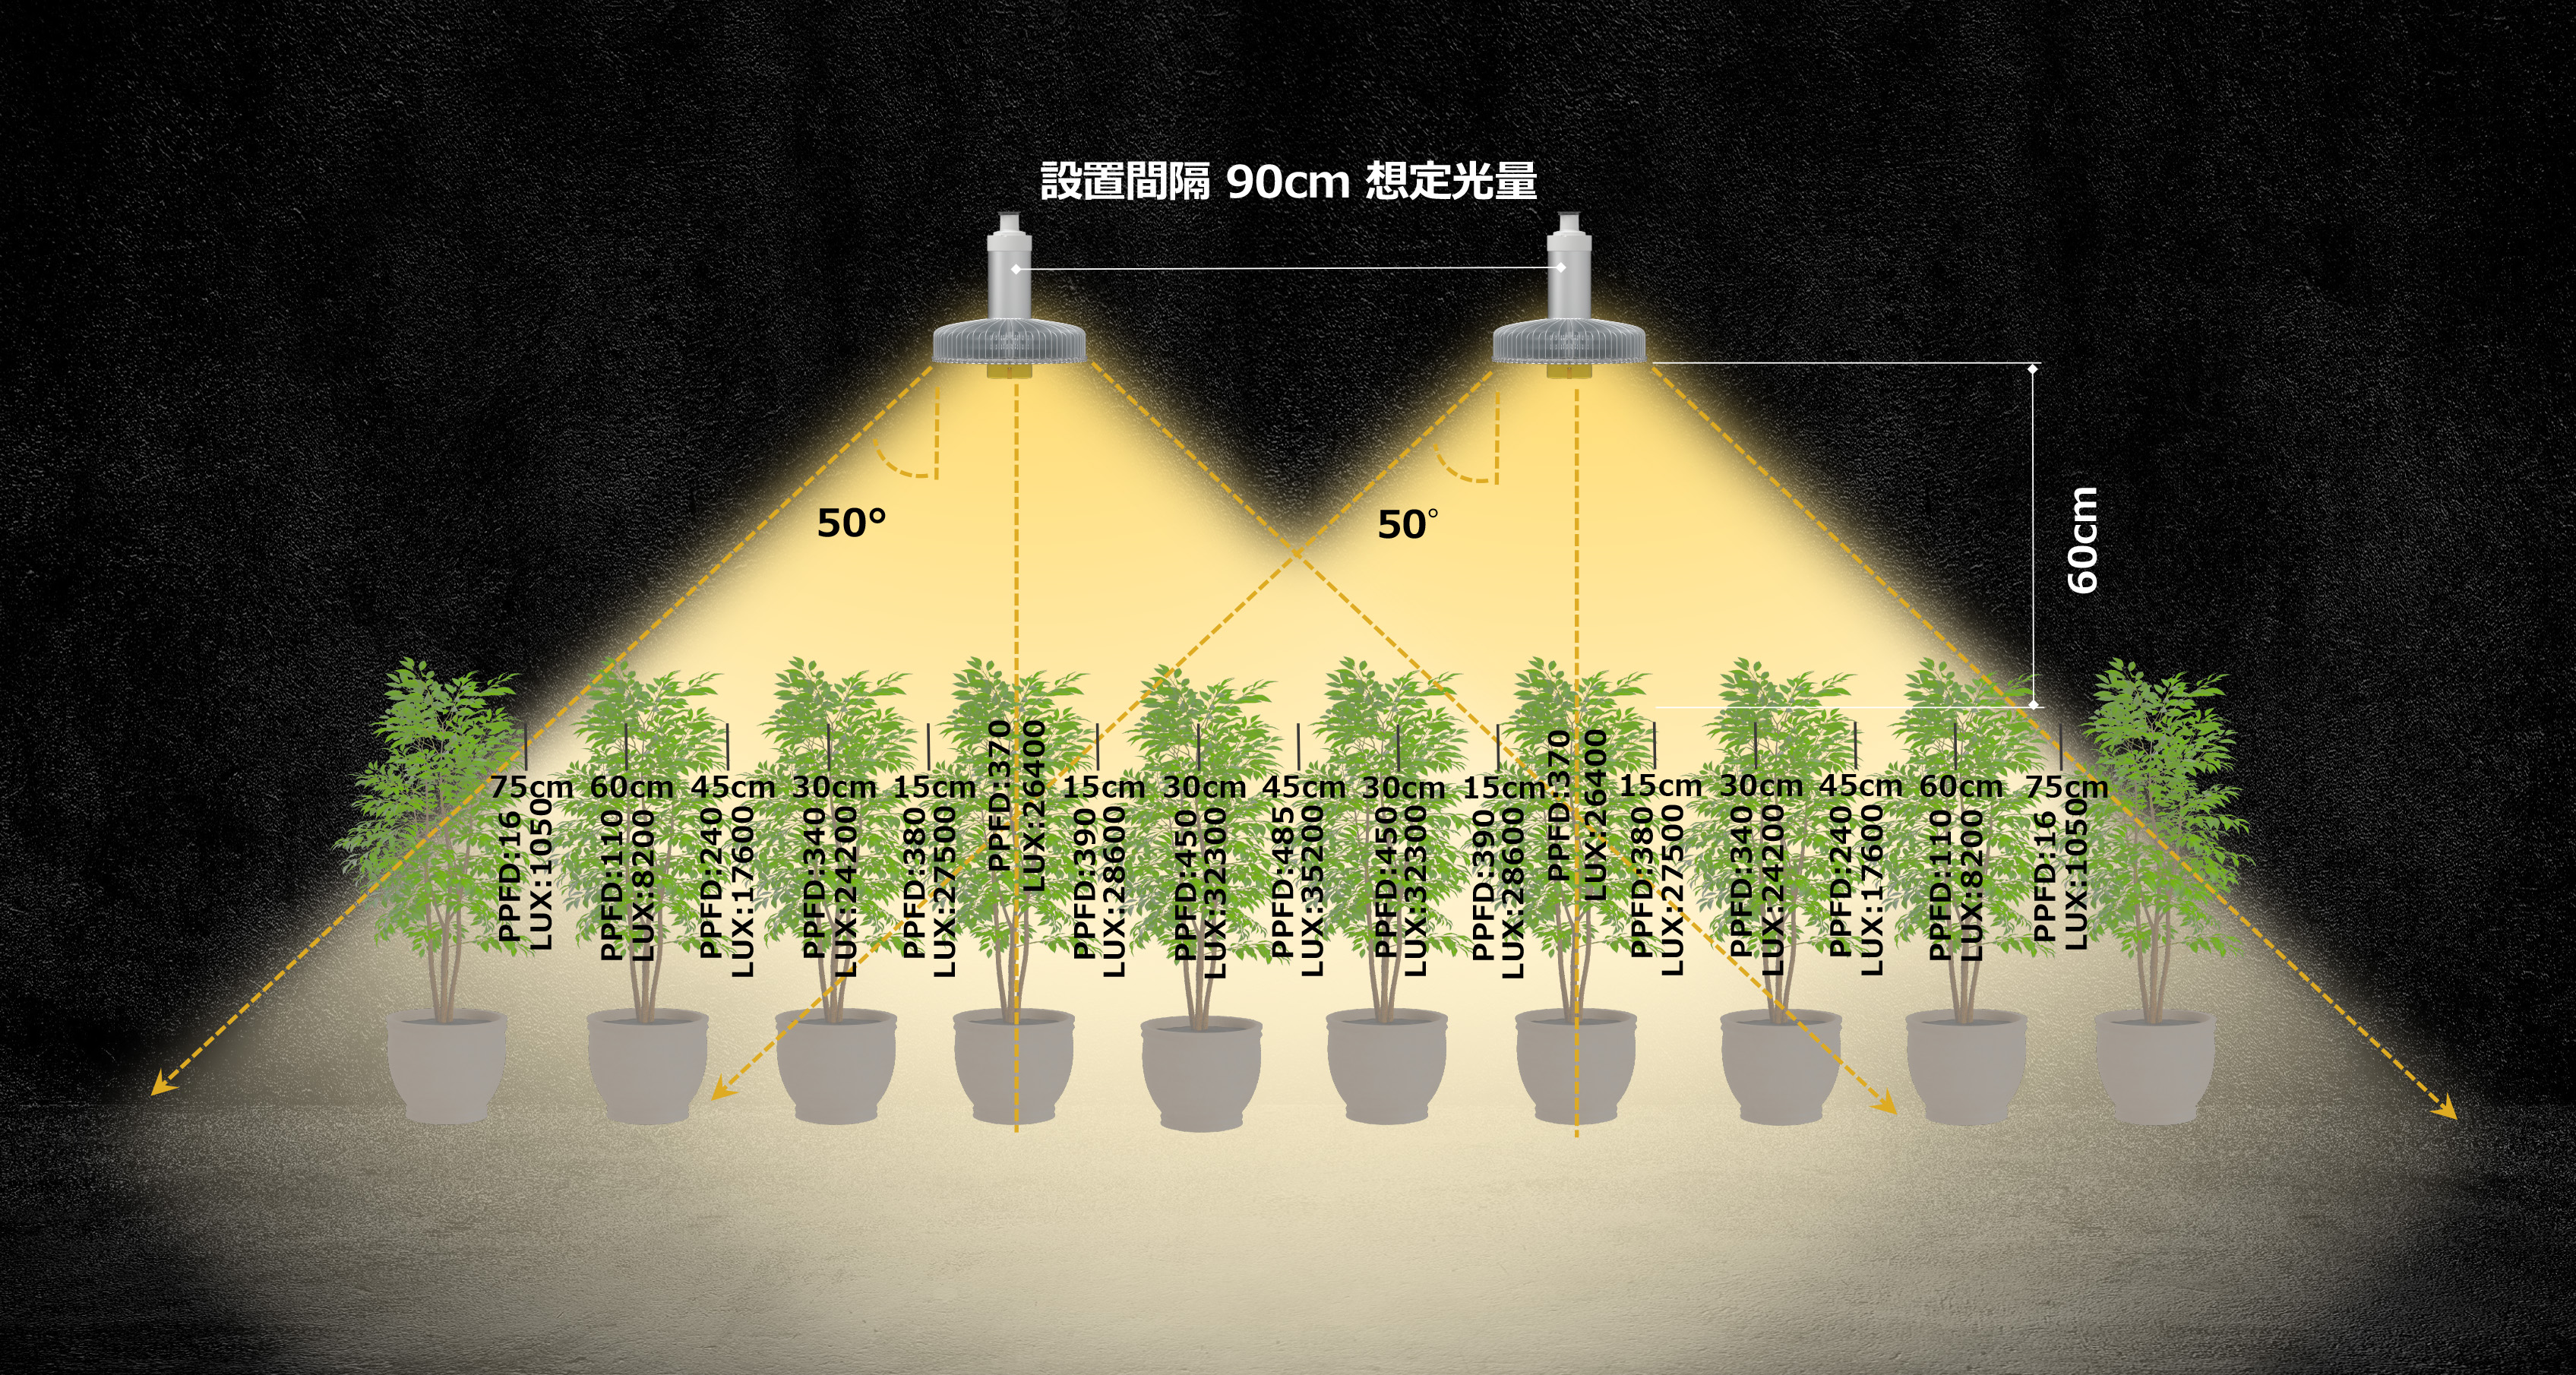 MiraclePunchy ミラクルパンチー Ver.2 植物育成LEDライト